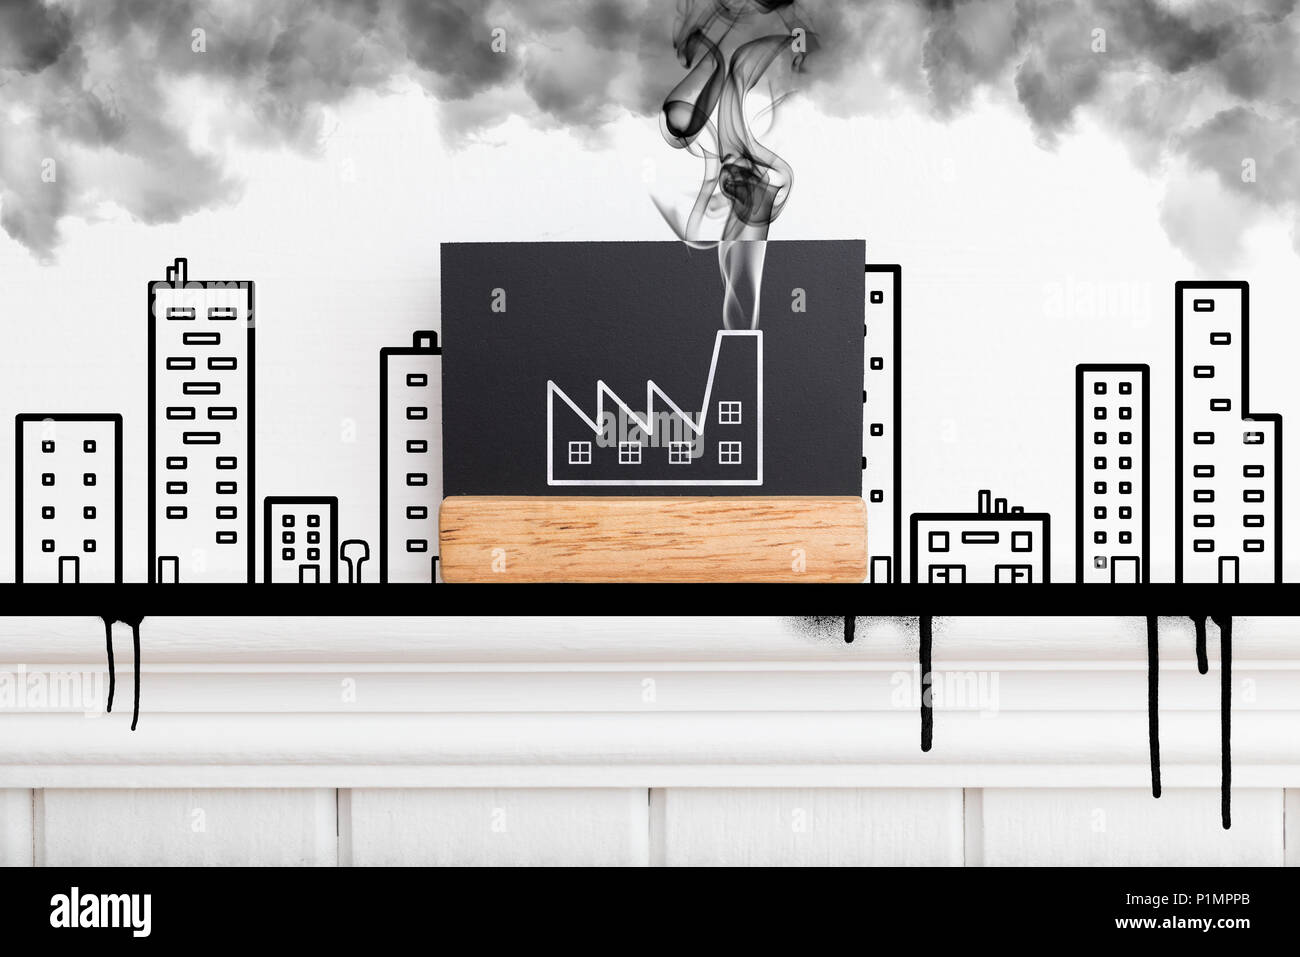 Immagine creativa di un muro di fabbrica con emissione di fumo. Fumatori concetto di fabbrica. Uno stile piatto Foto Stock